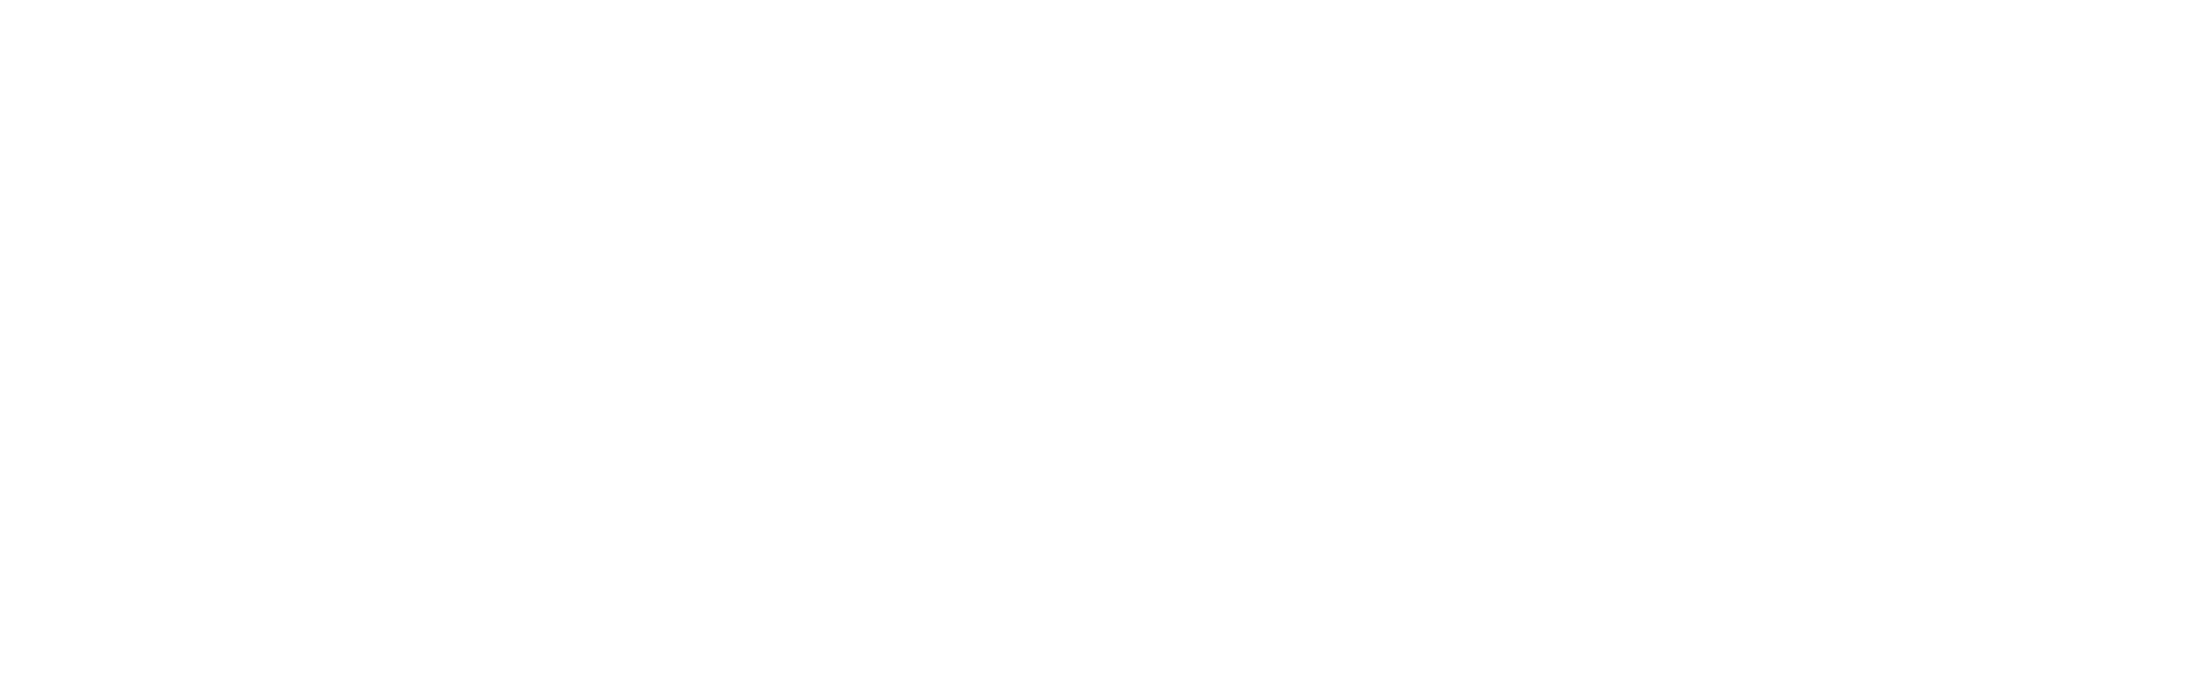 Remote Made Easy logo